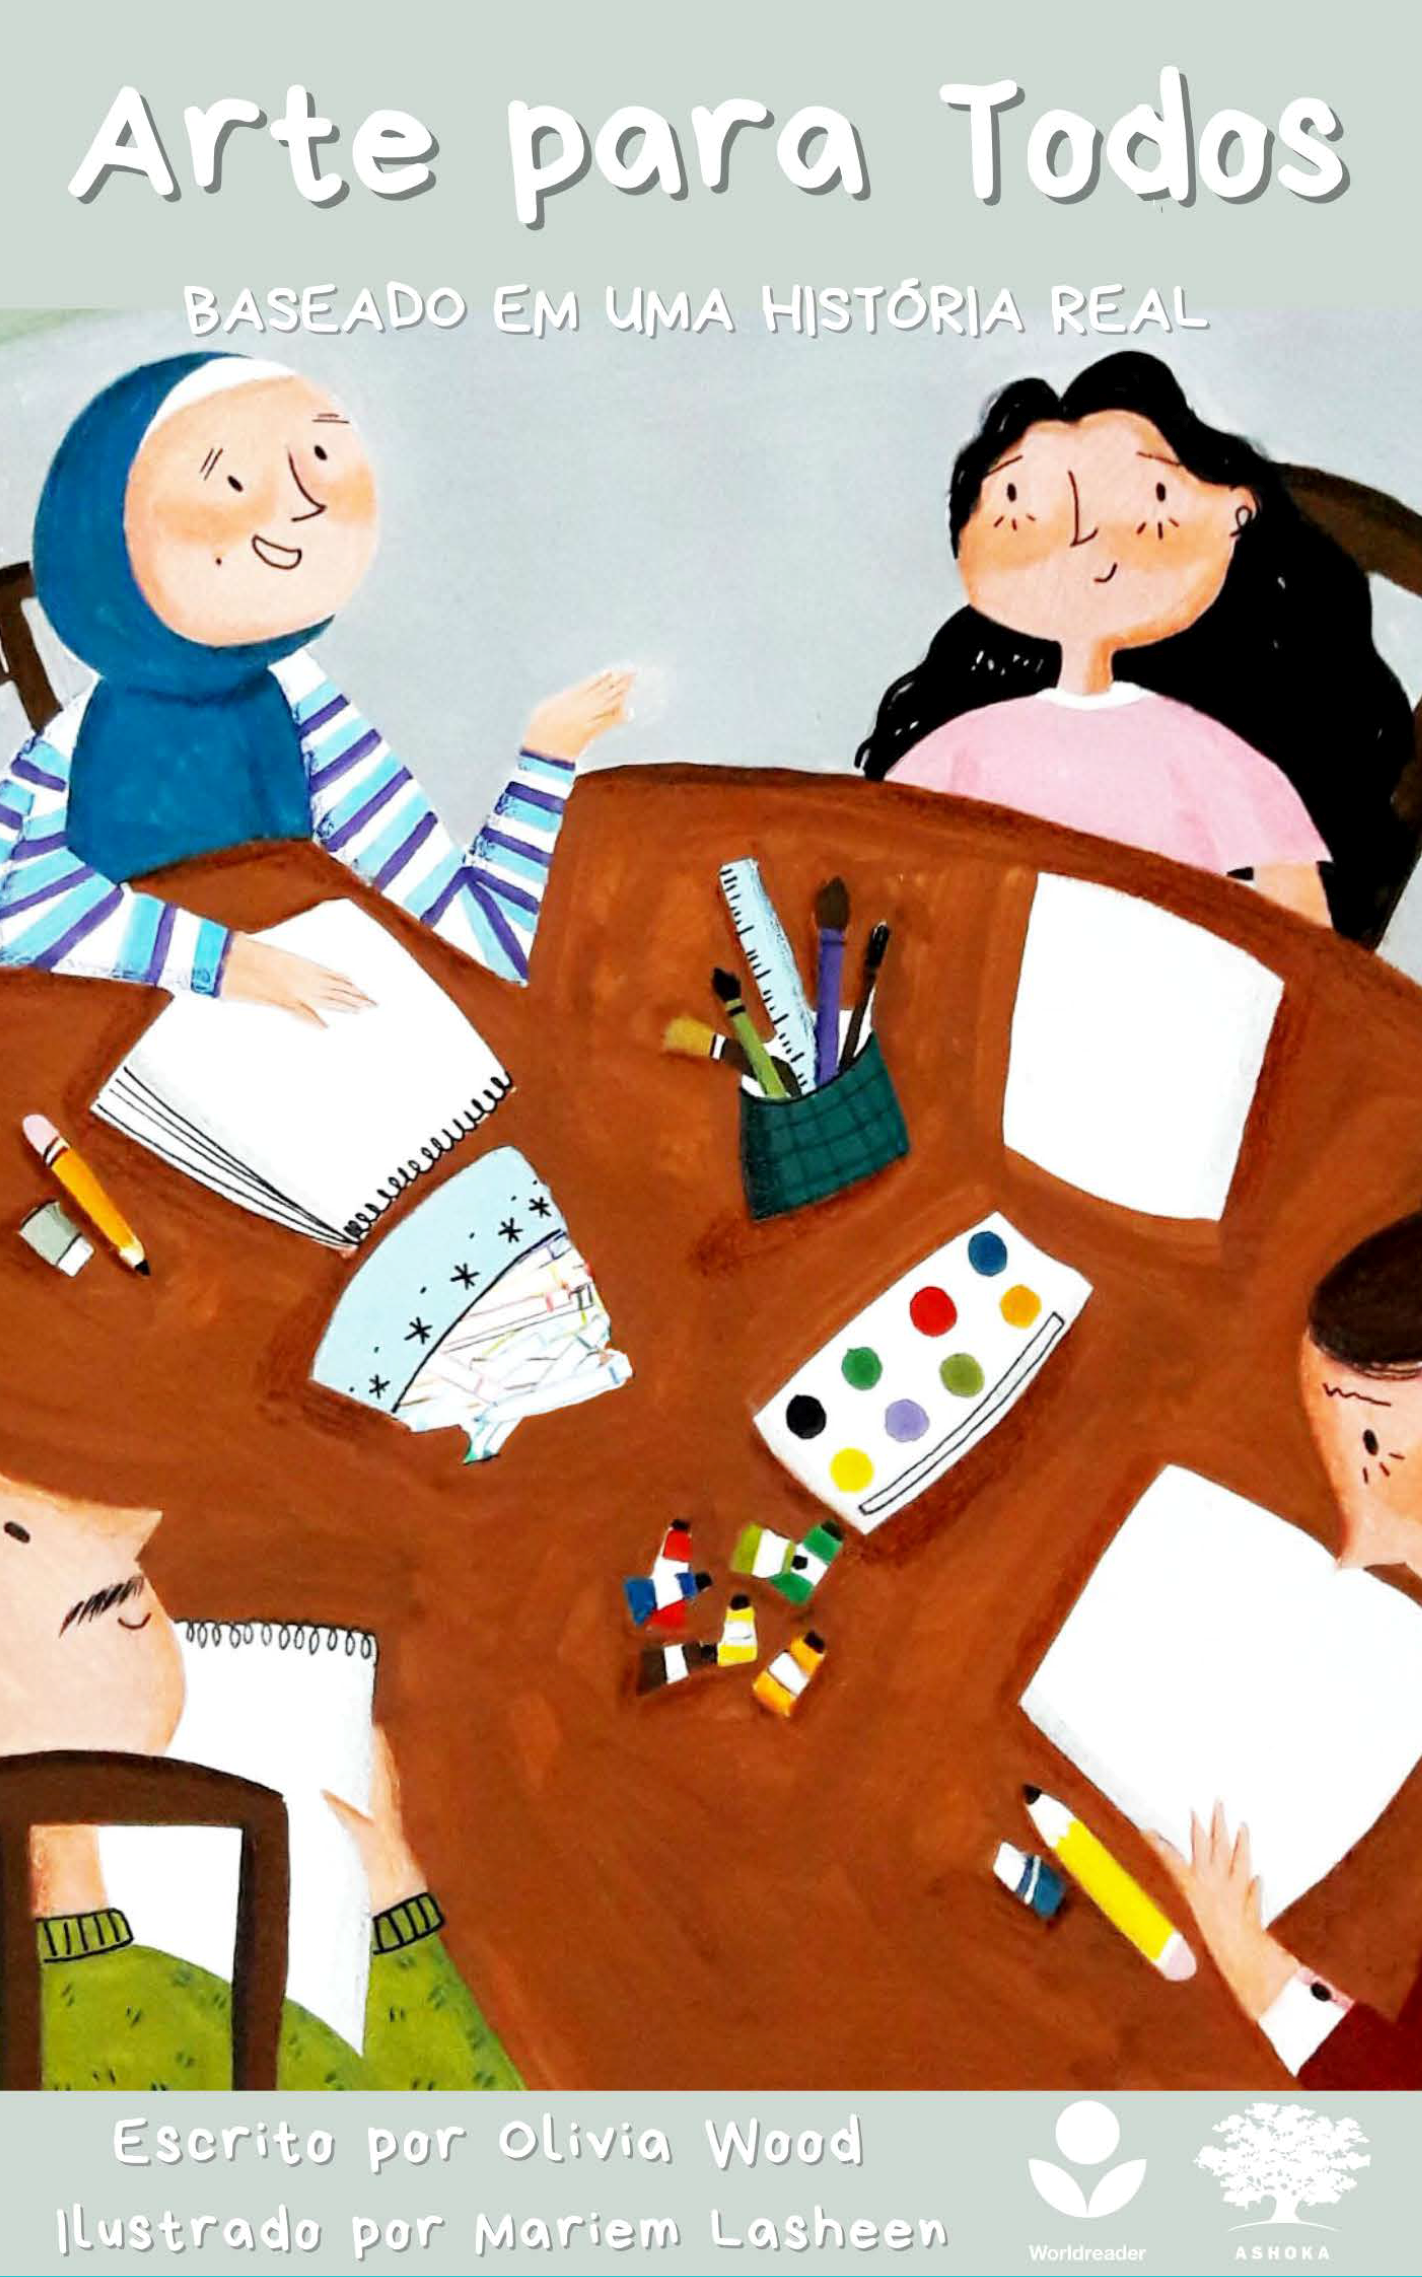 Capa do livro "Arte para Todos". Há uma ilustração de quatro jovens ao redor de uma mesa, que está repleta de materiais artísticos.